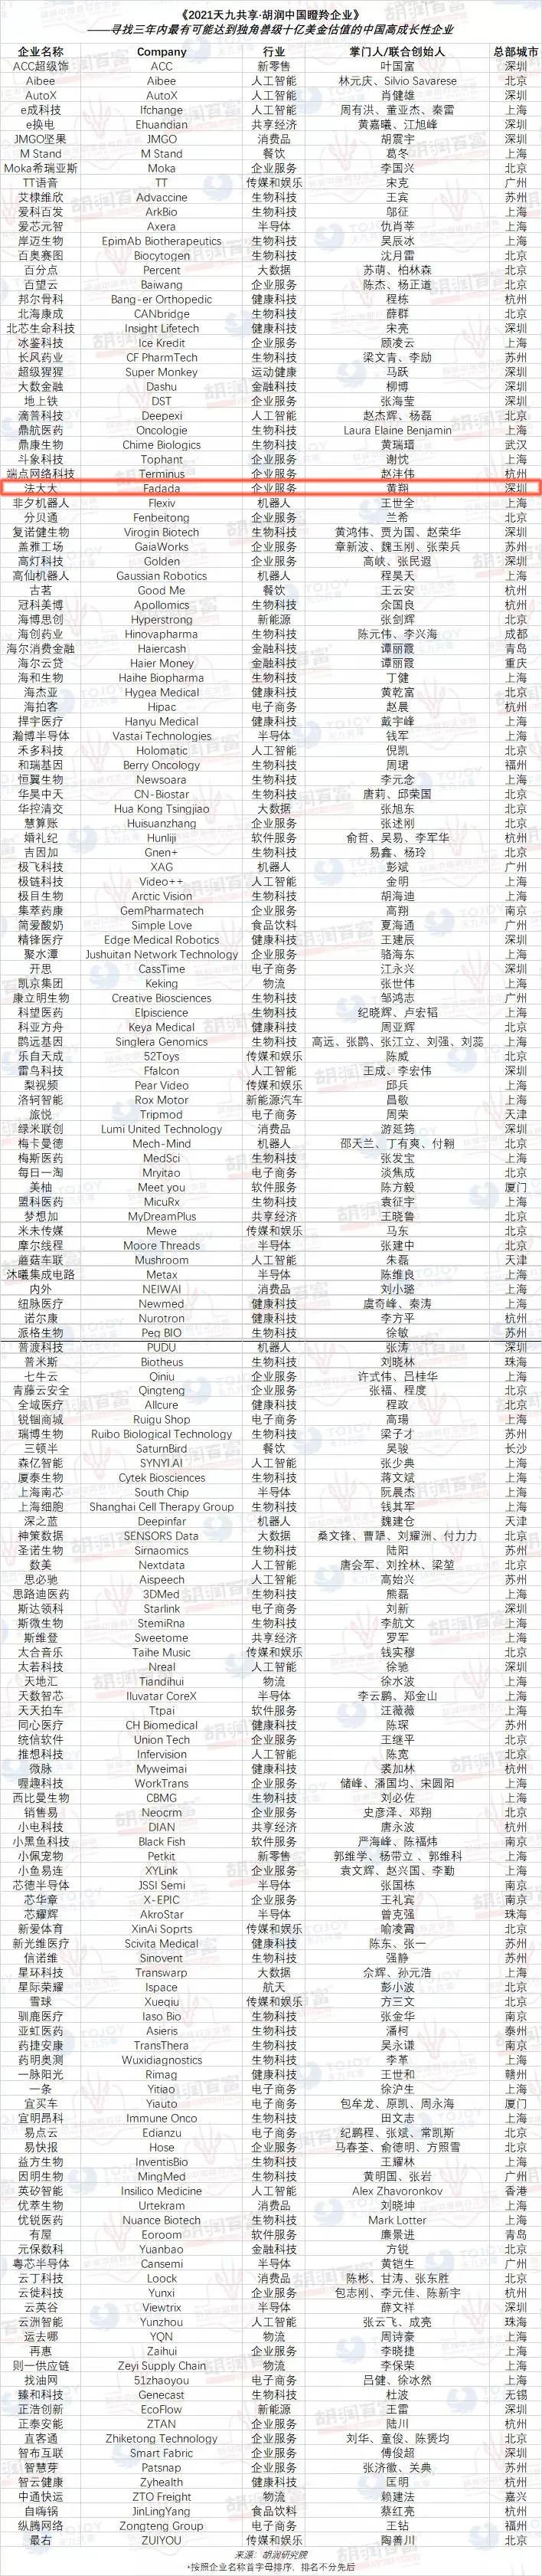 《2021天九共享·胡润中国瞪羚企业》榜单